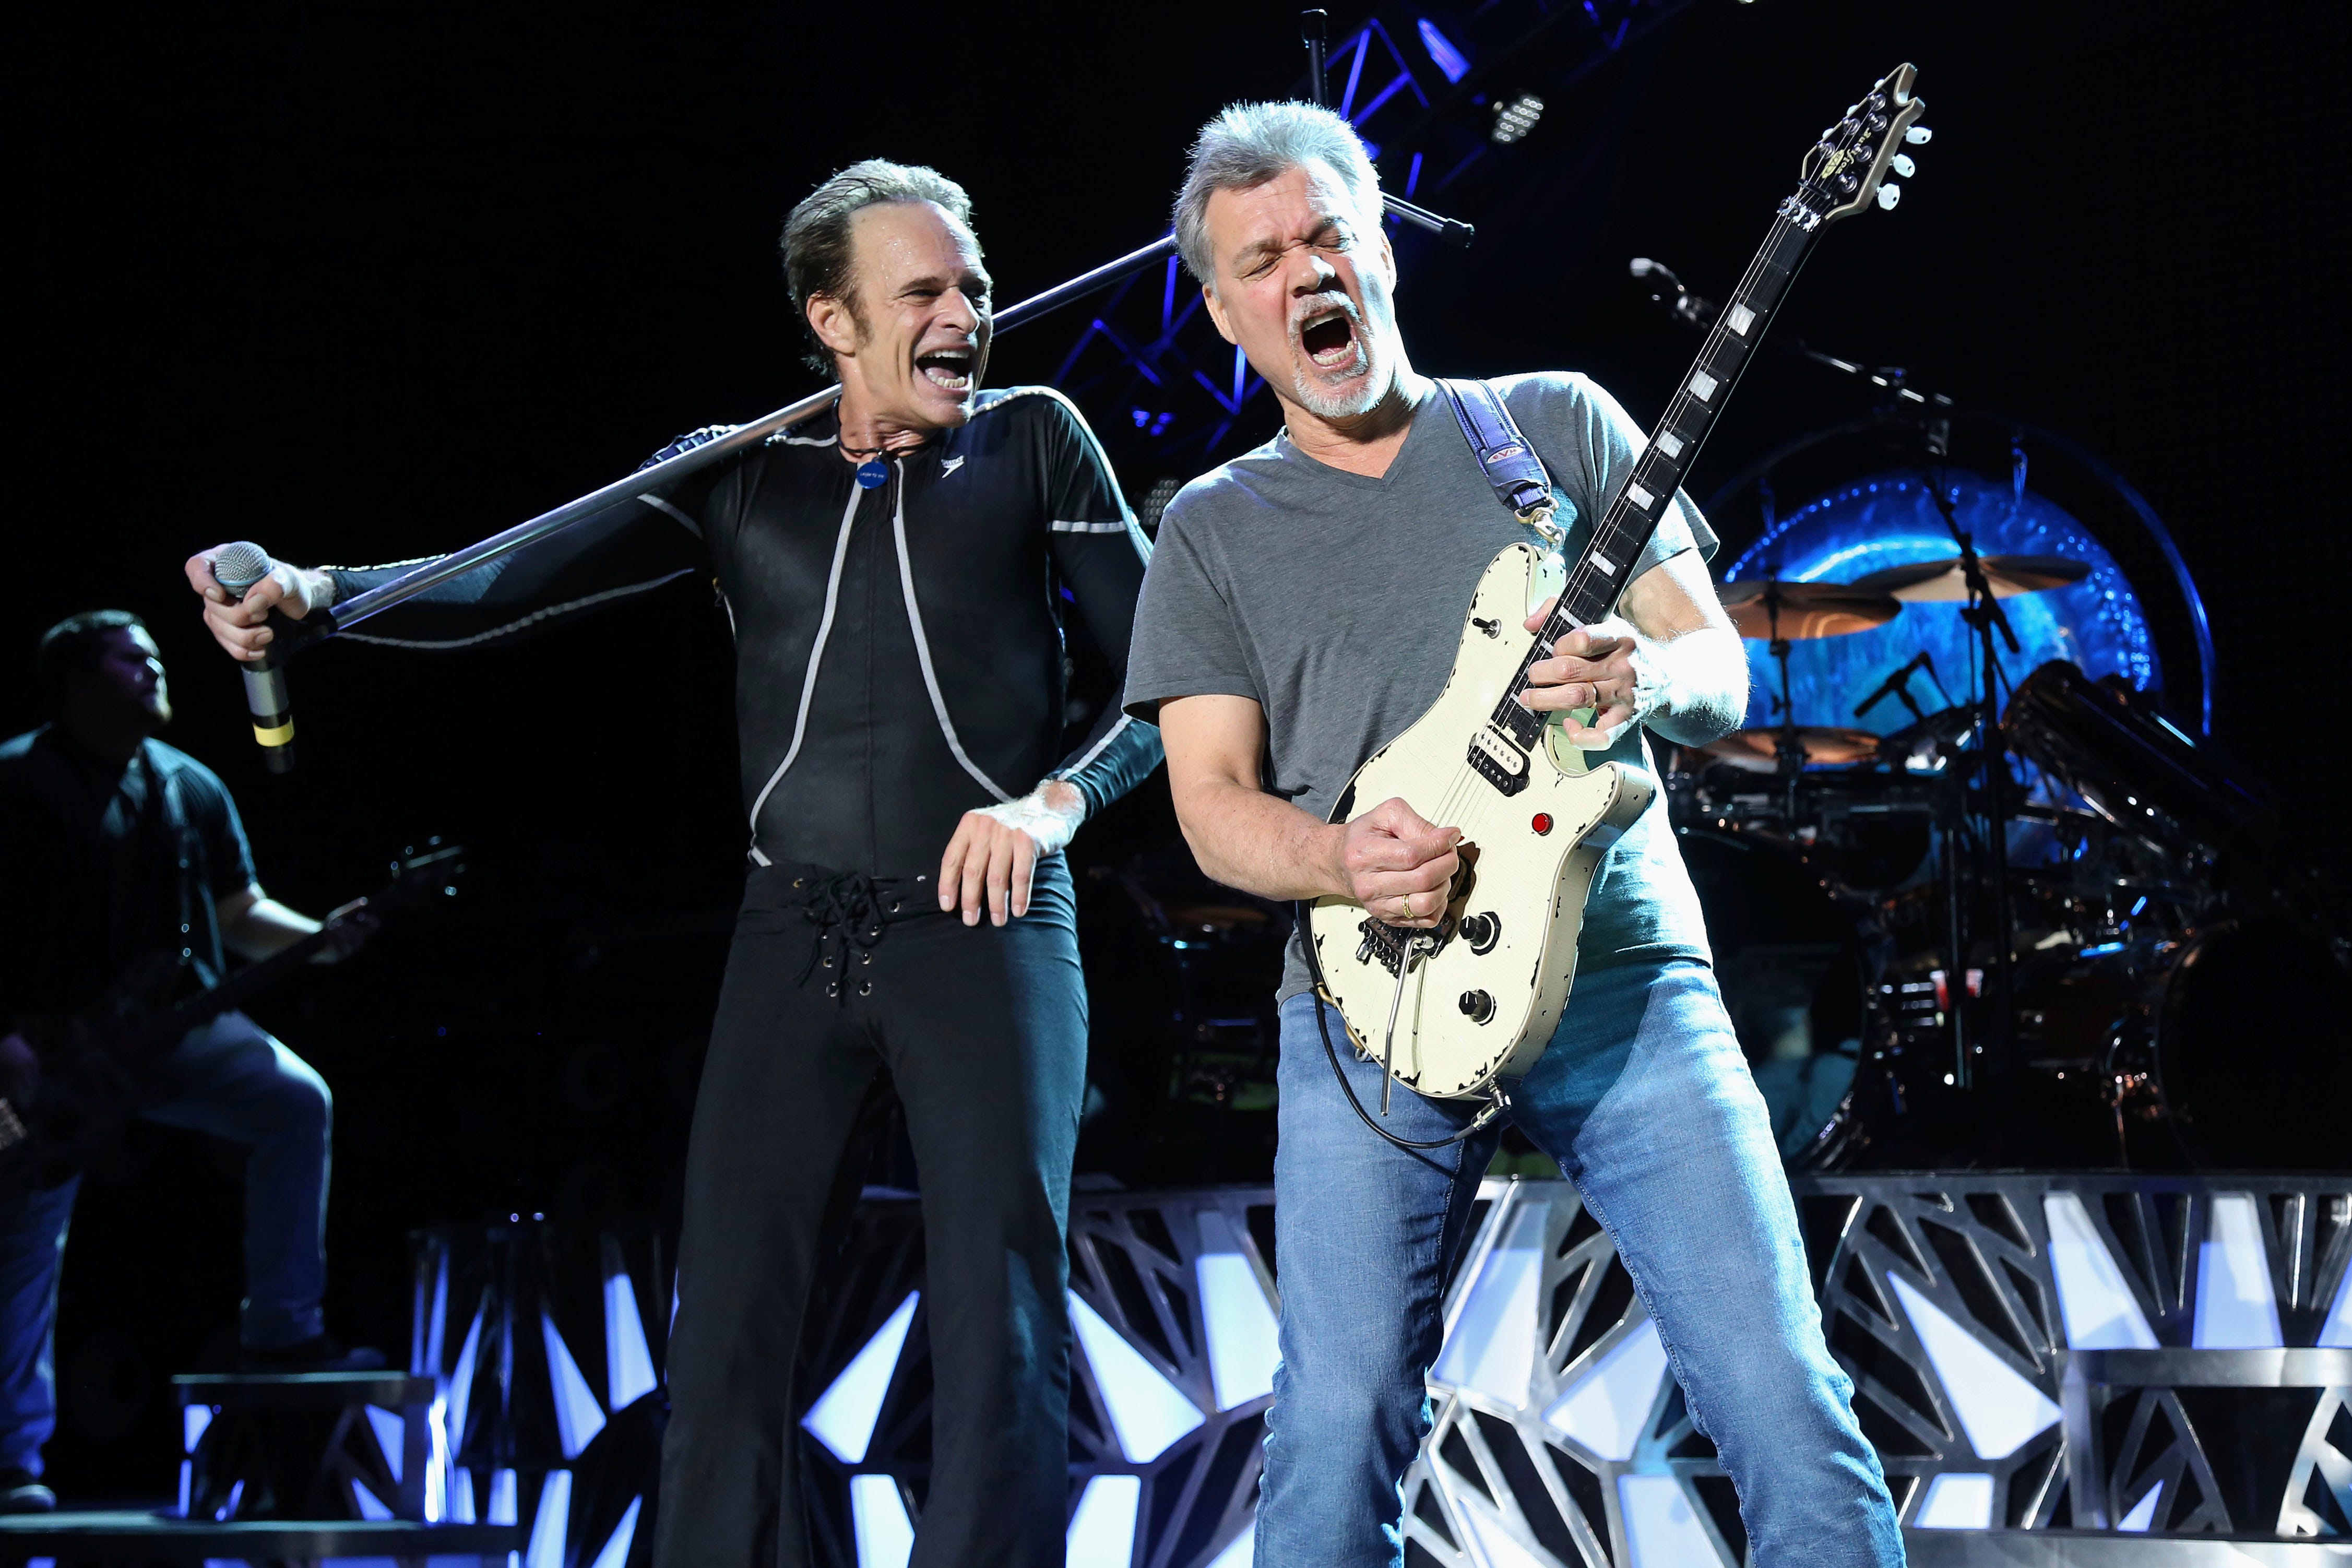 Guitar legend Eddie Van Halen, performing with Van Halen bandmate David Lee Roth in 2015, died of cancer in October.